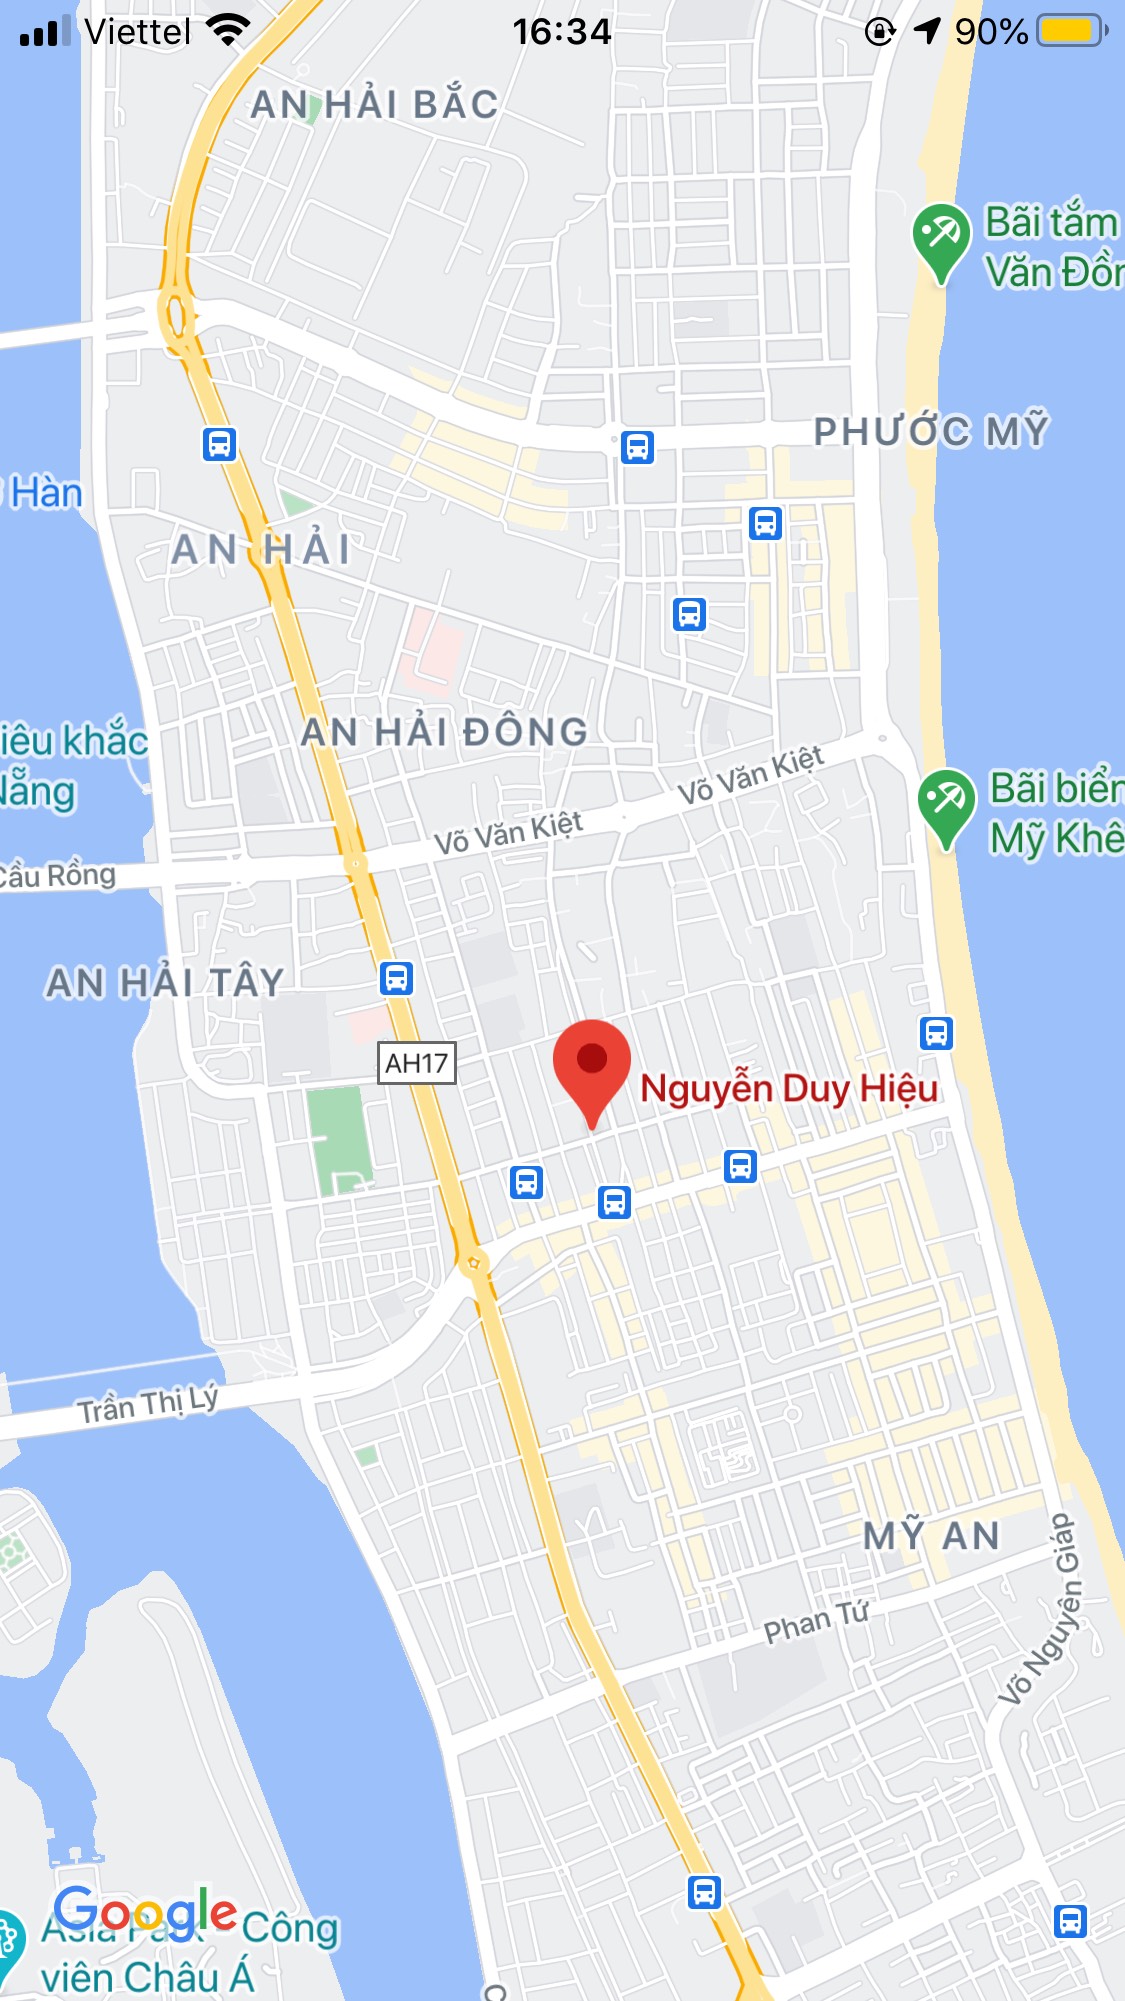 Bán nhà mặt tiền đường Nguyễn Duy Hiệu, gần chợ An Hải Đông. DT: 142m2, giá: 11,36 tỷ